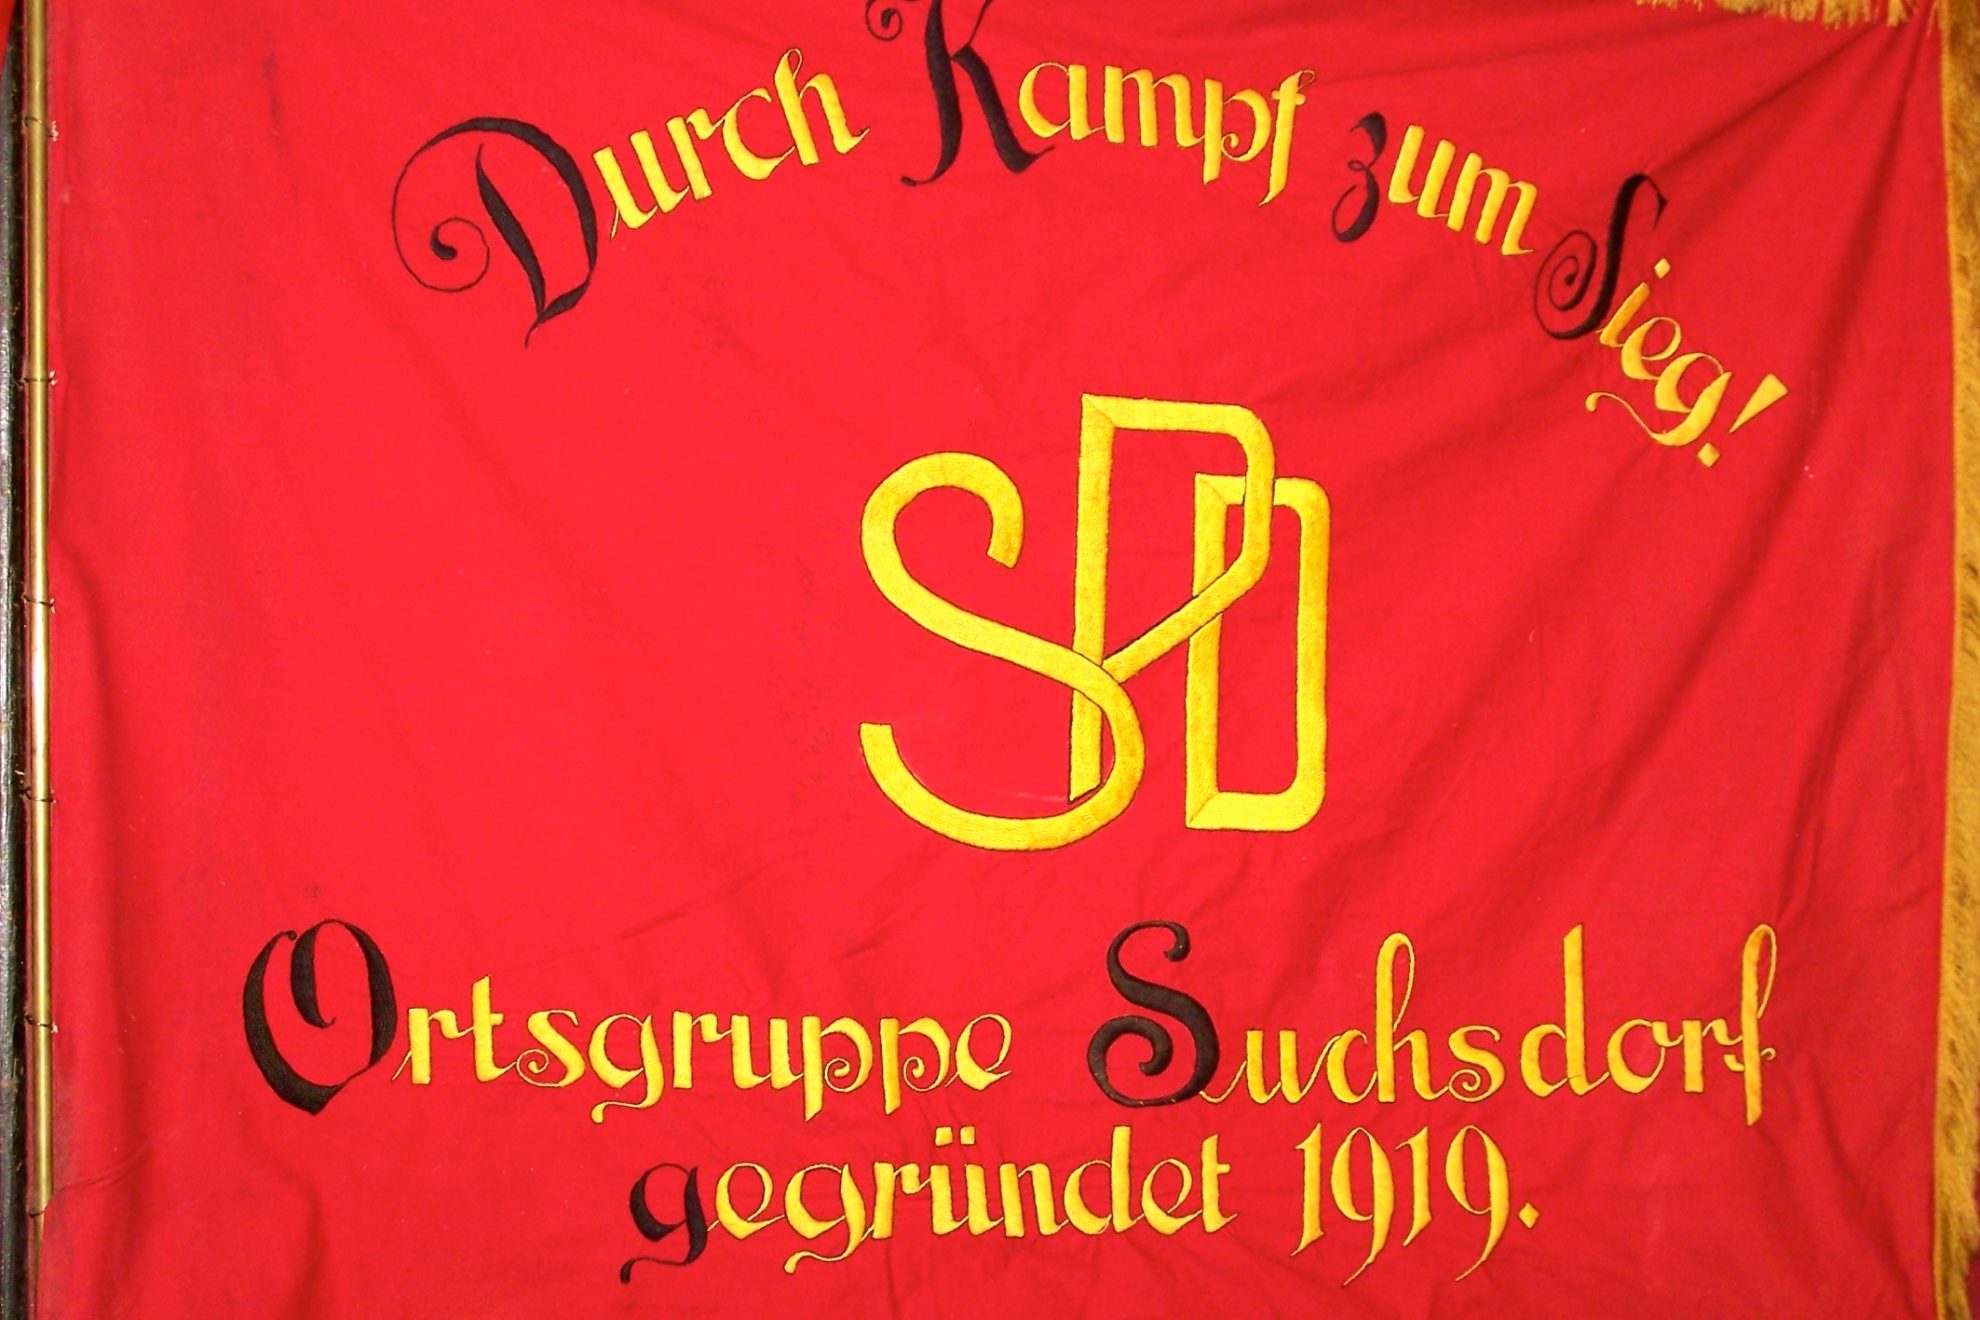 Traditionsfahne der SPD Suchsdorf